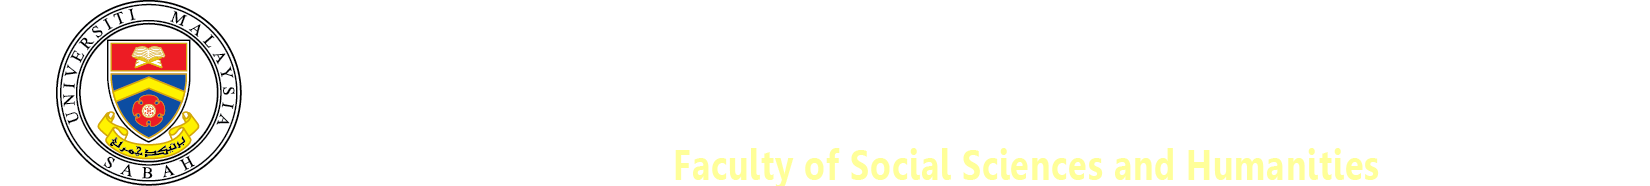 Fakulti Sains Sosial dan Kemanusiaan